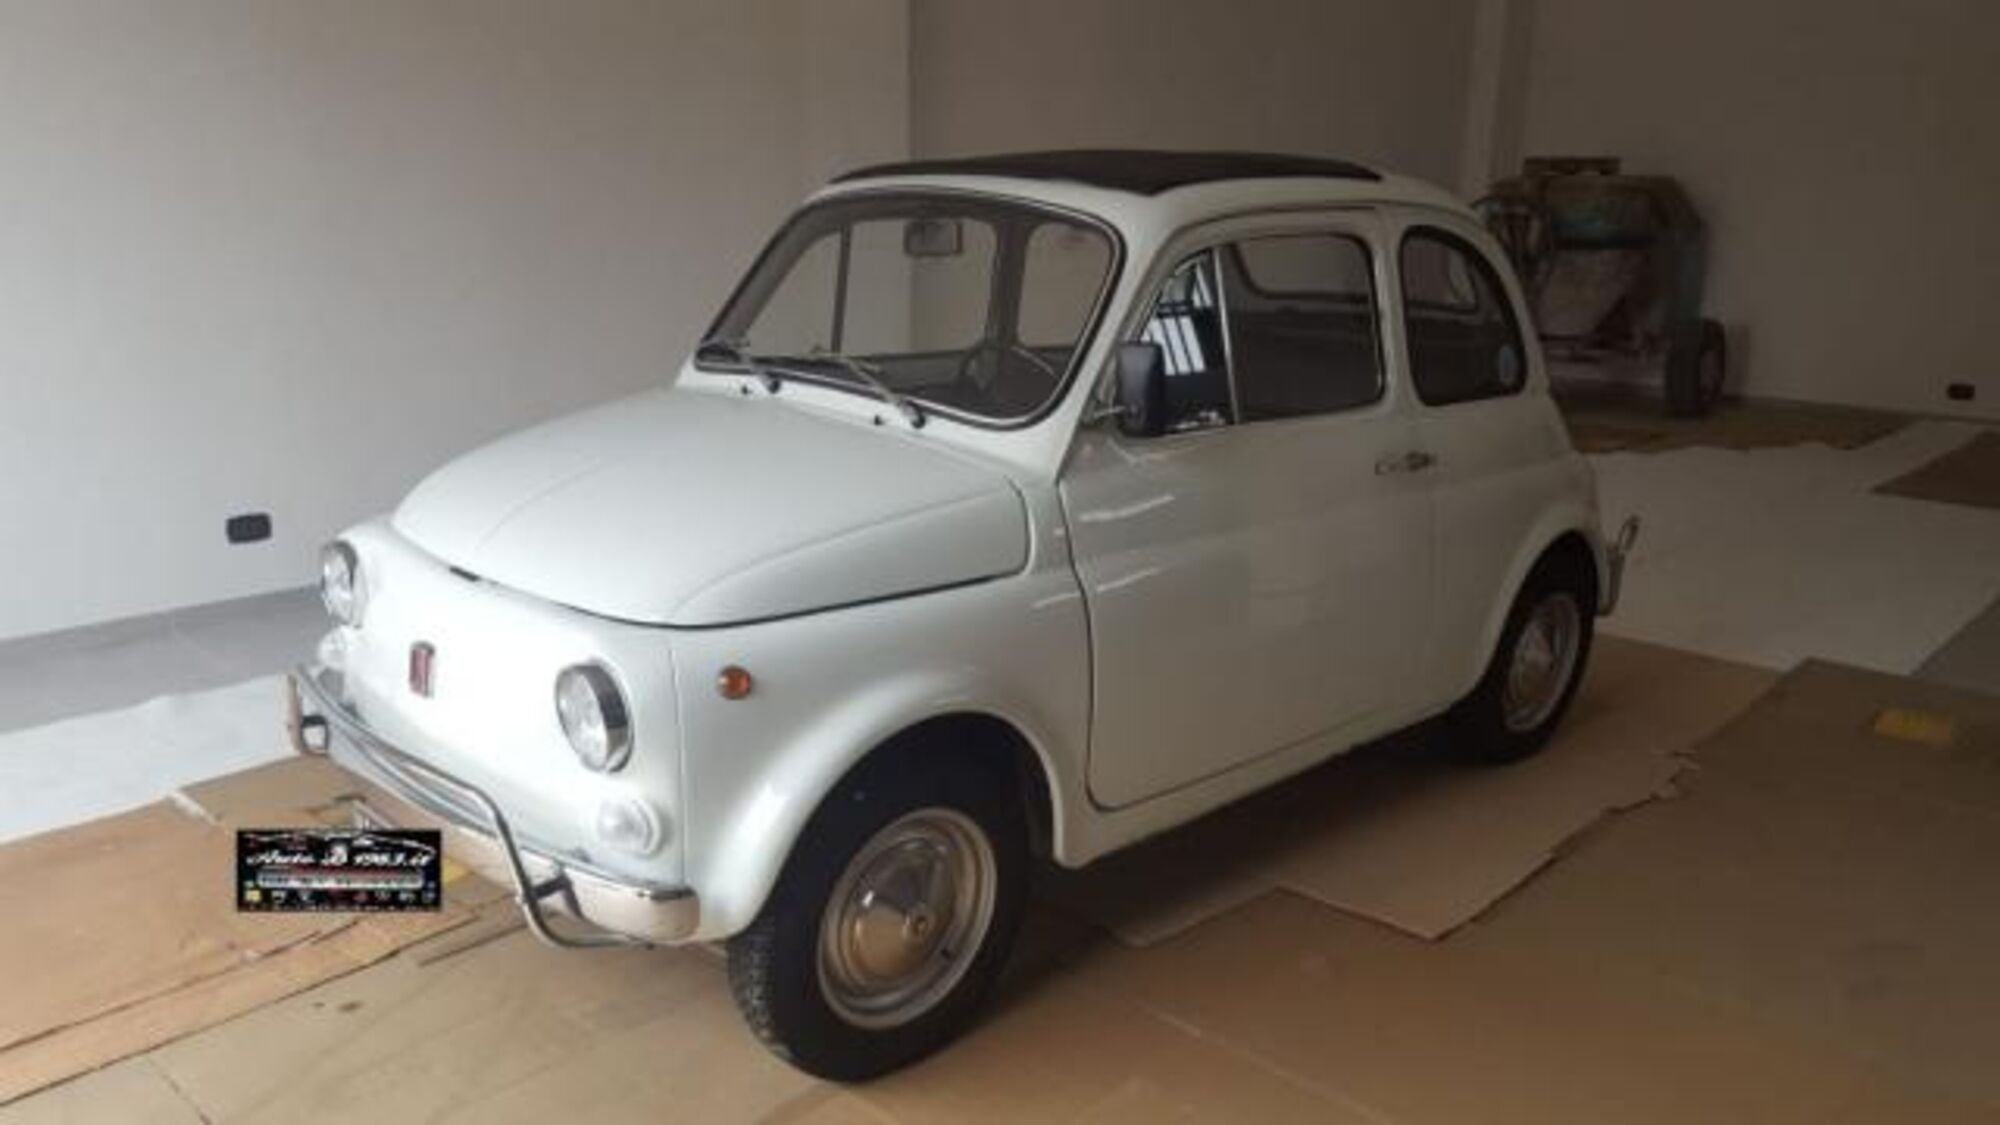 Fiat 500 1.2 by DIESEL